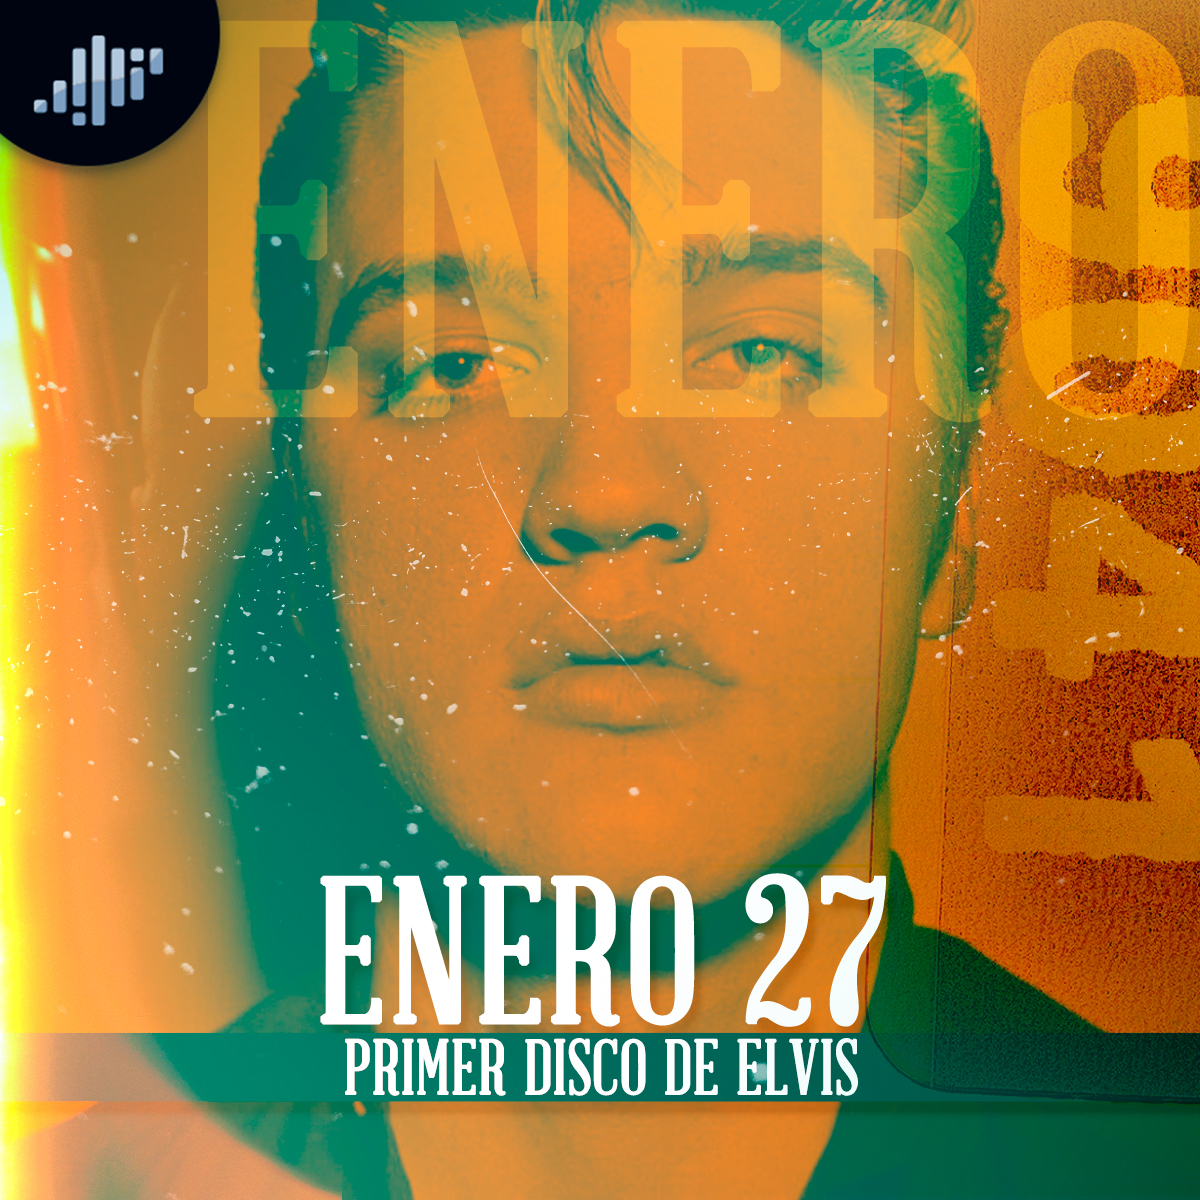 Cuartico de historia | Enero 27 | El primer disco de Elvis